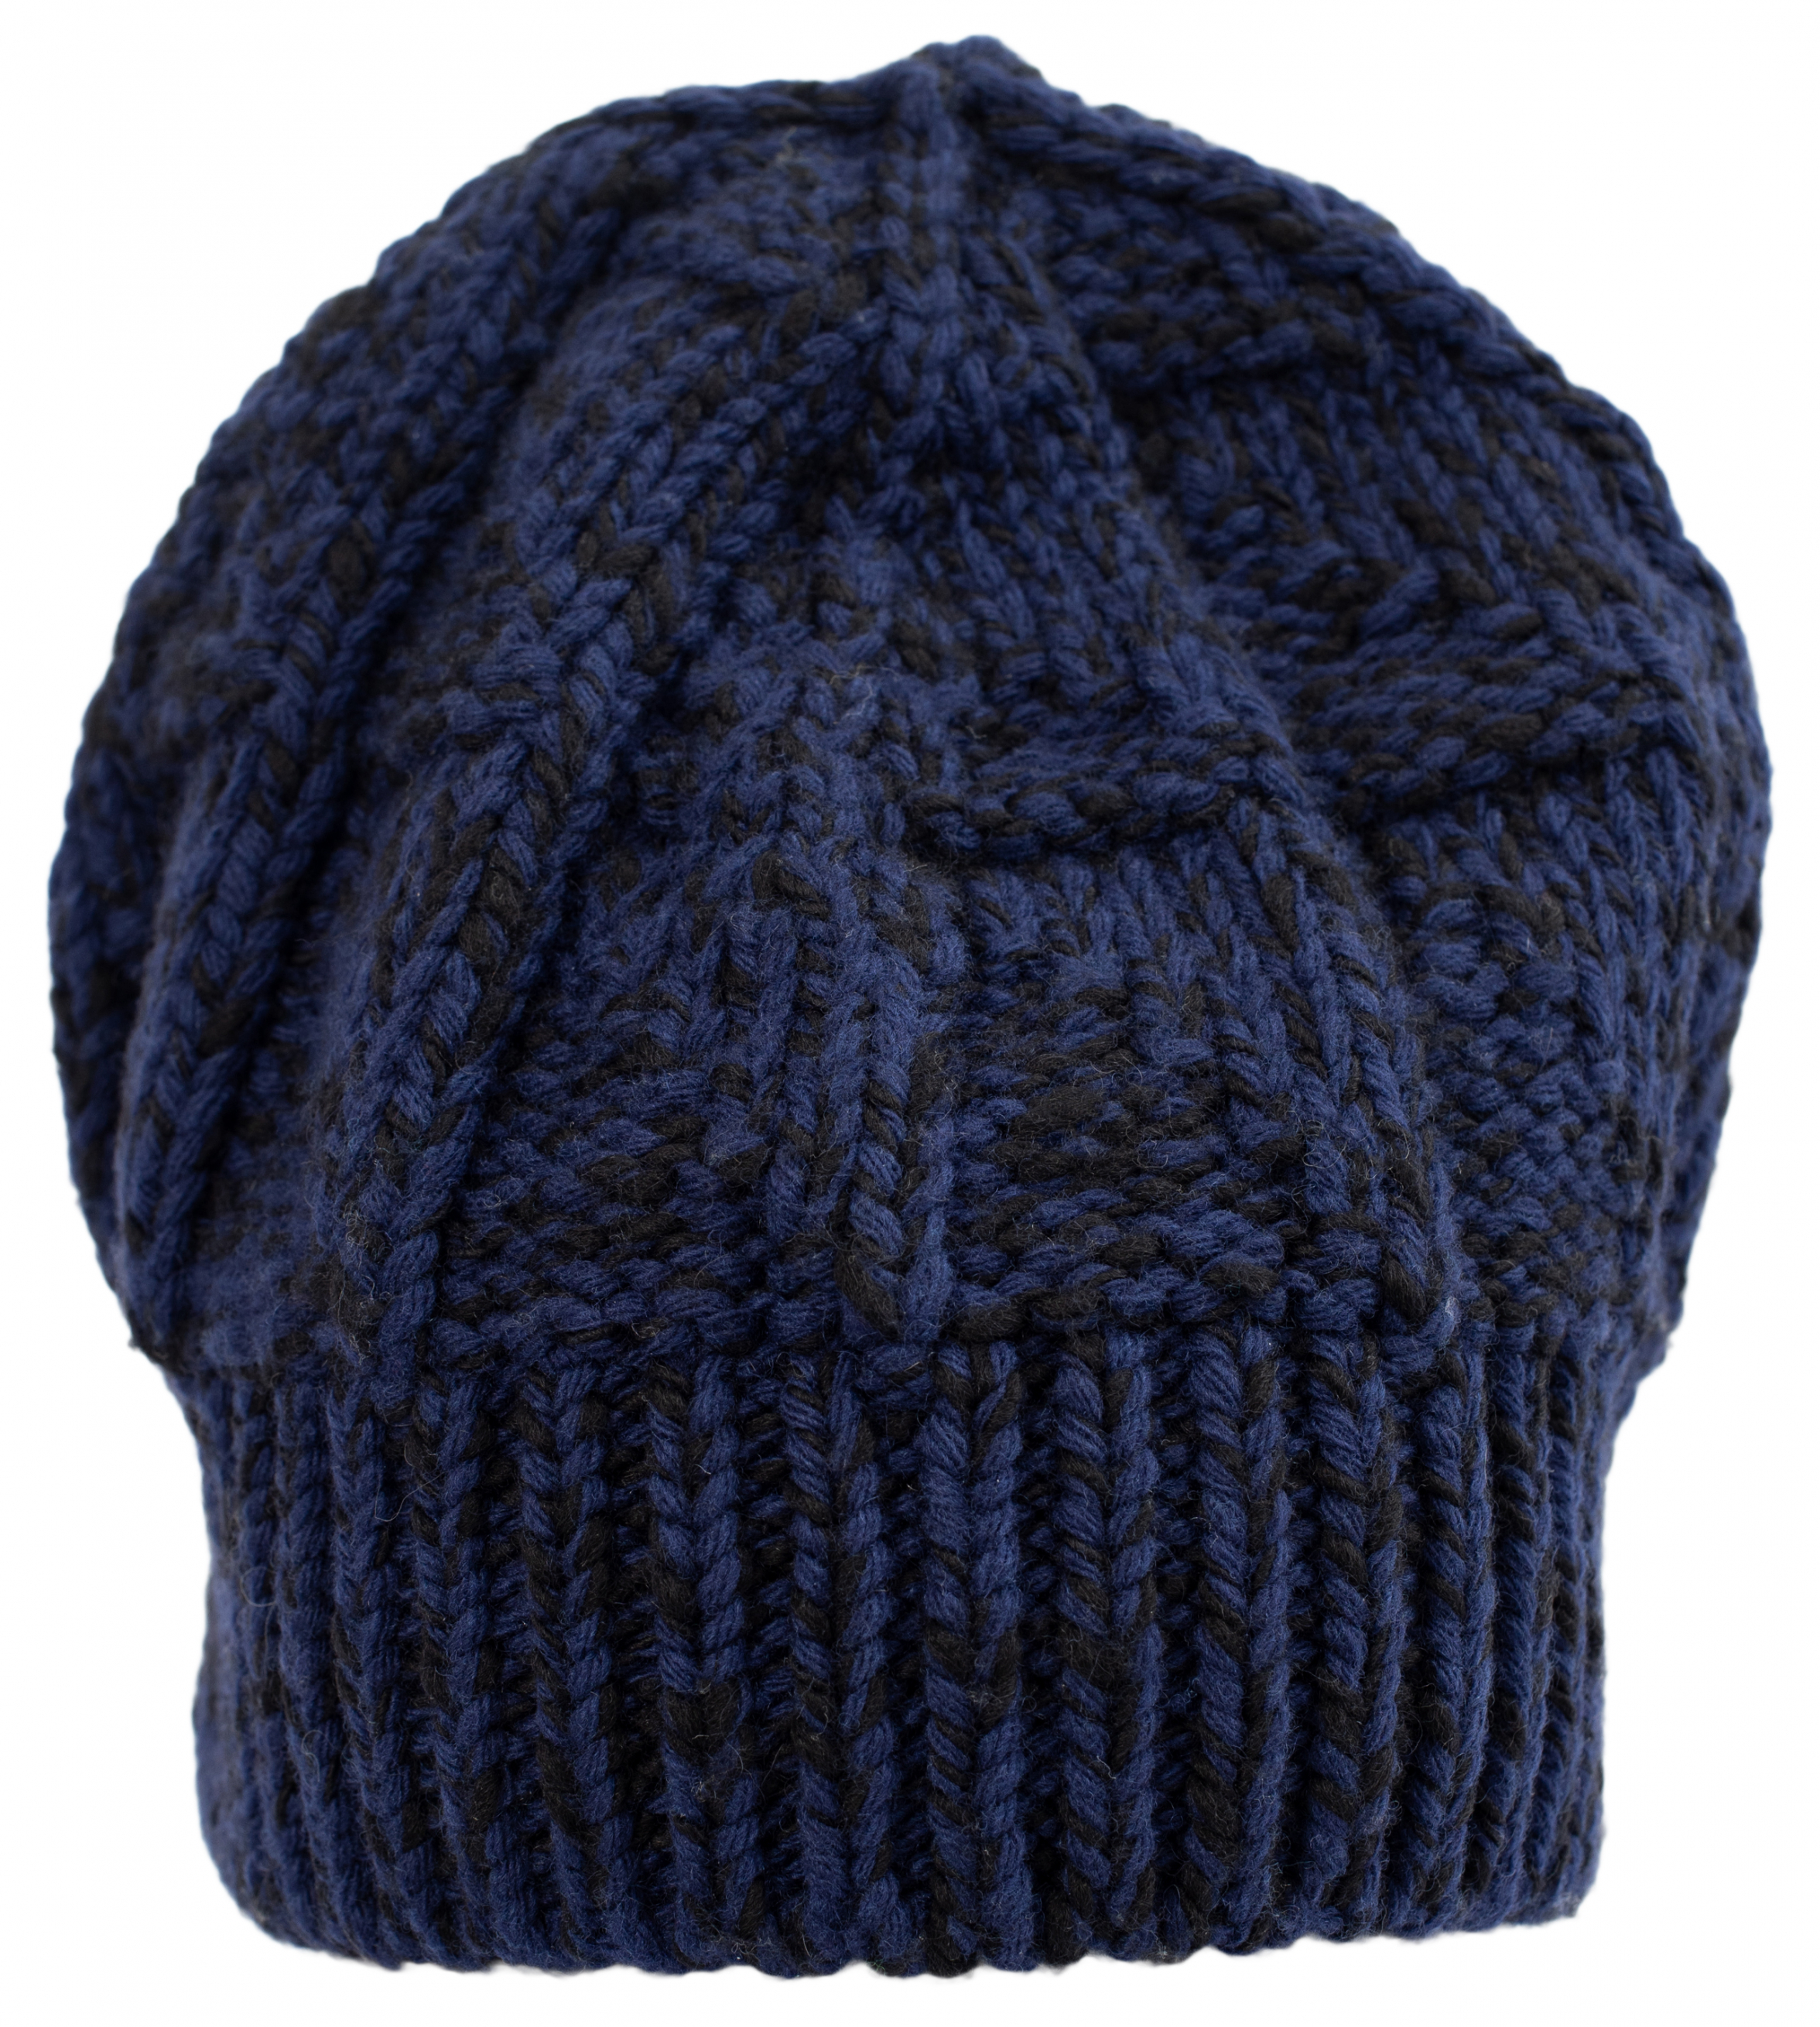 Шерстяная шапка крупной вязки Jil Sander JPUT769542/MTY20118/460, размер One Size